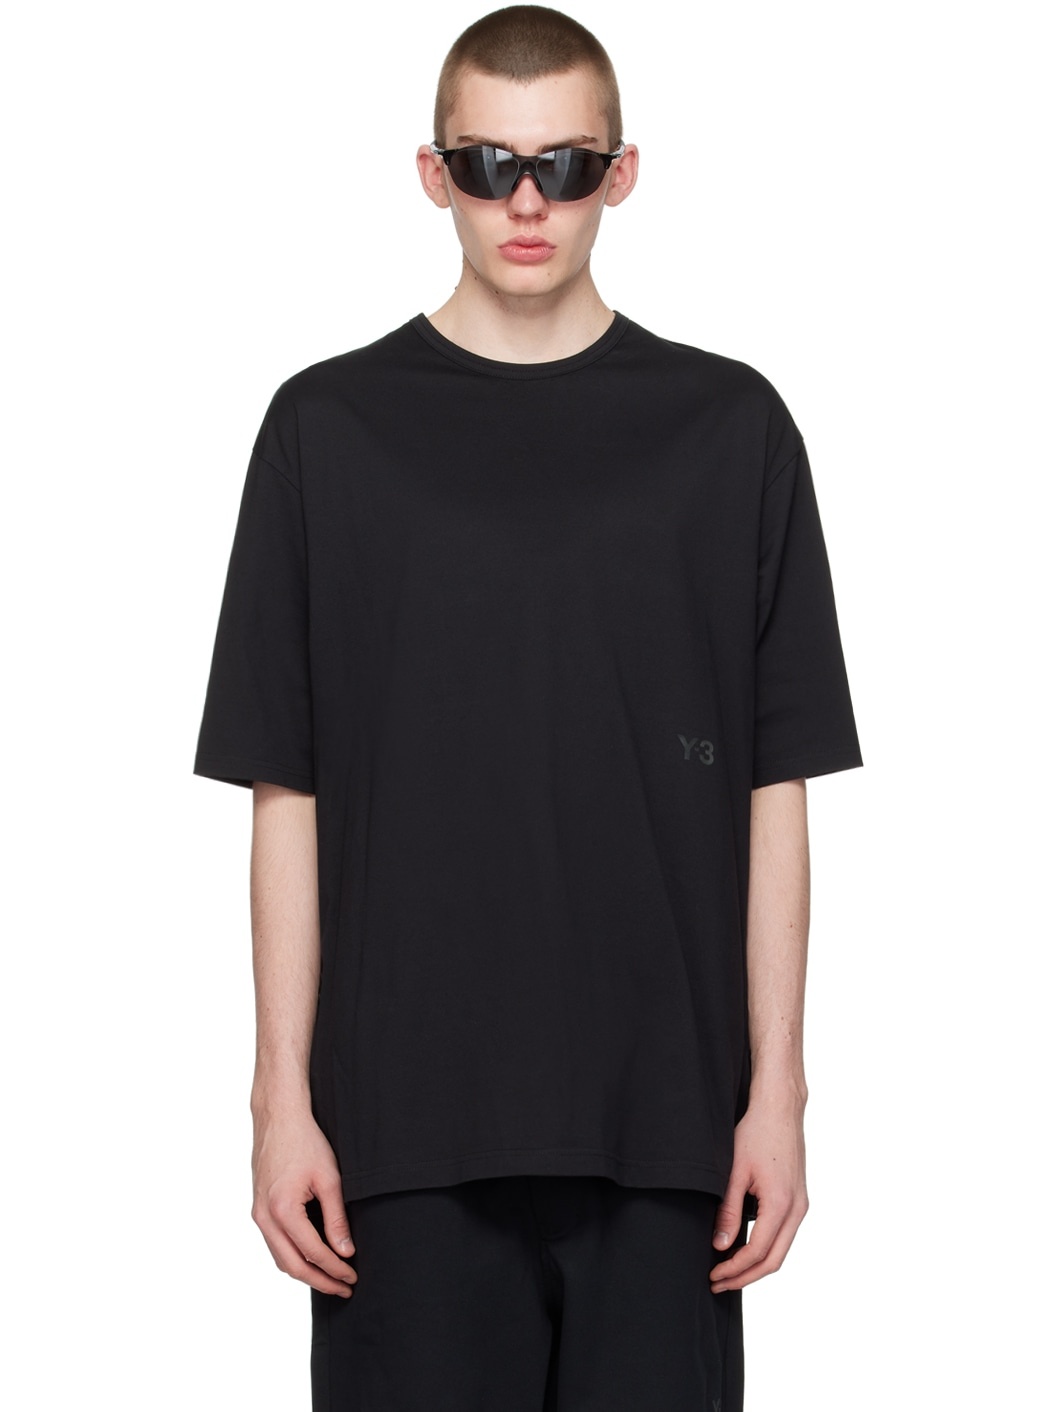 Black Boxy T-Shirt - 1